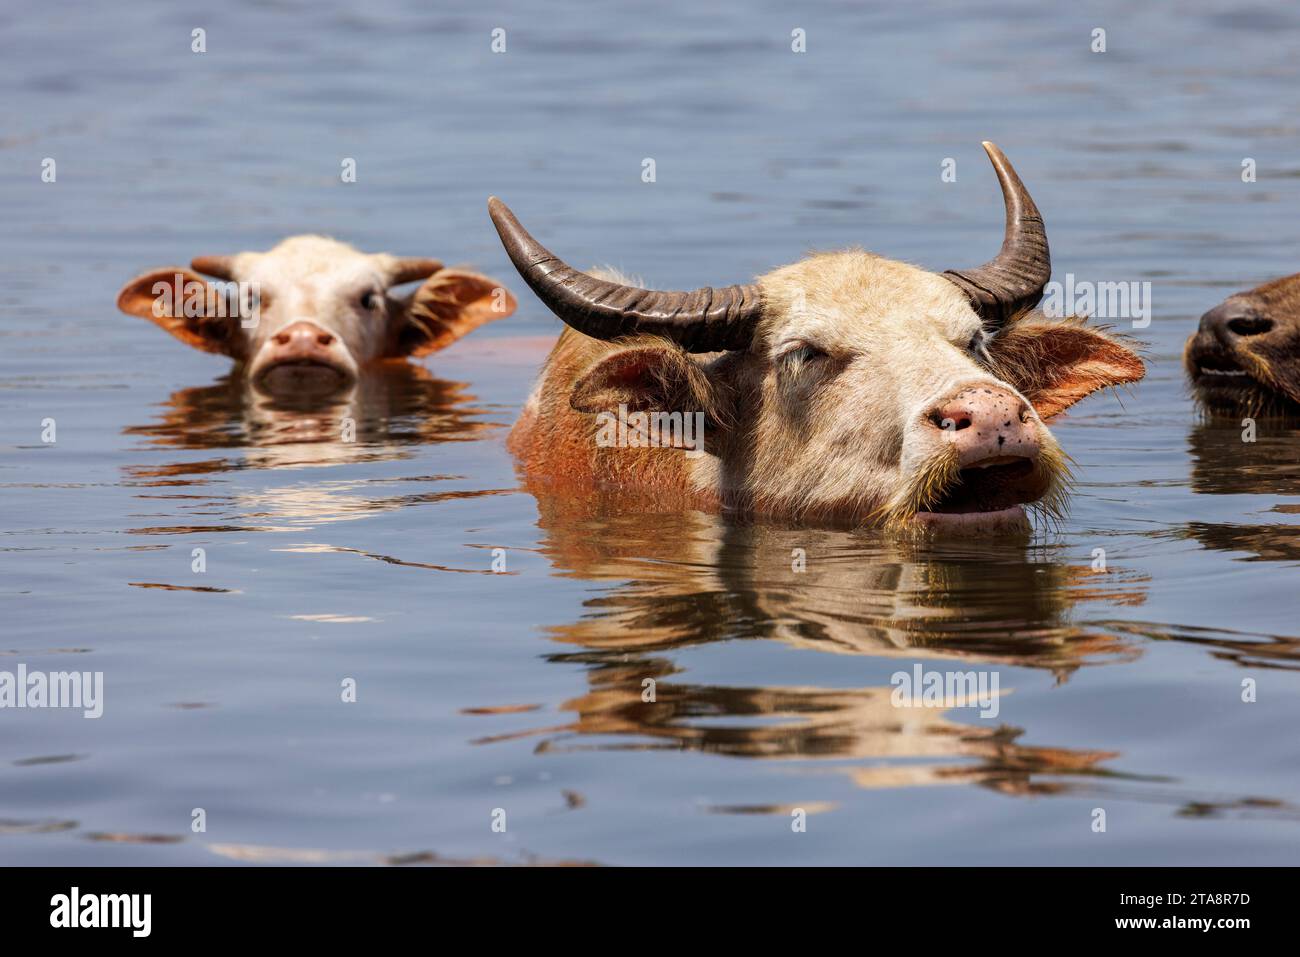 Asiatische Wasserbüffel, Bubalus arnee, baden in einem Fluss nahe der Stadt Baucau im Norden der Demokratischen republik Timor-Leste. Stockfoto